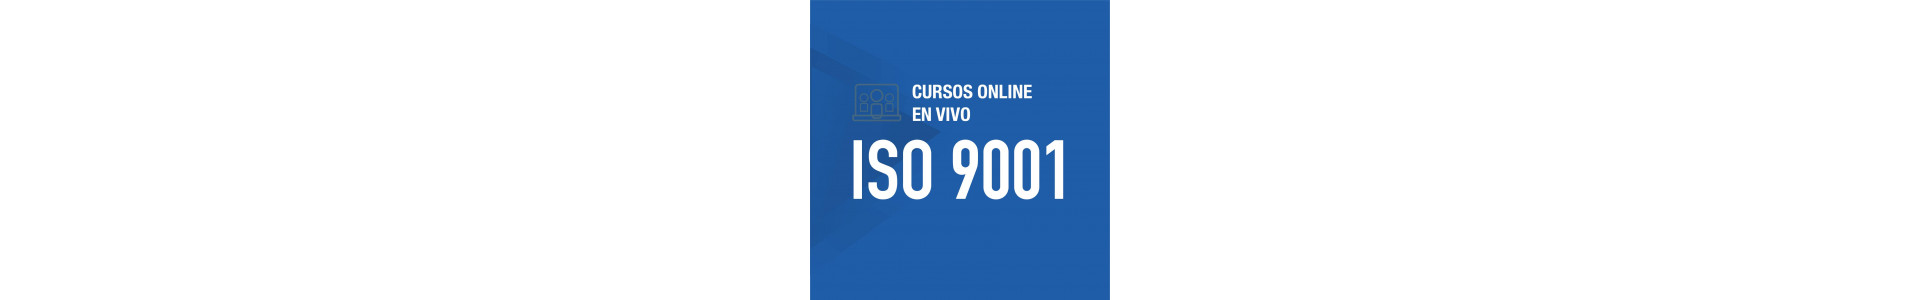 Cursos online | ISO 9001